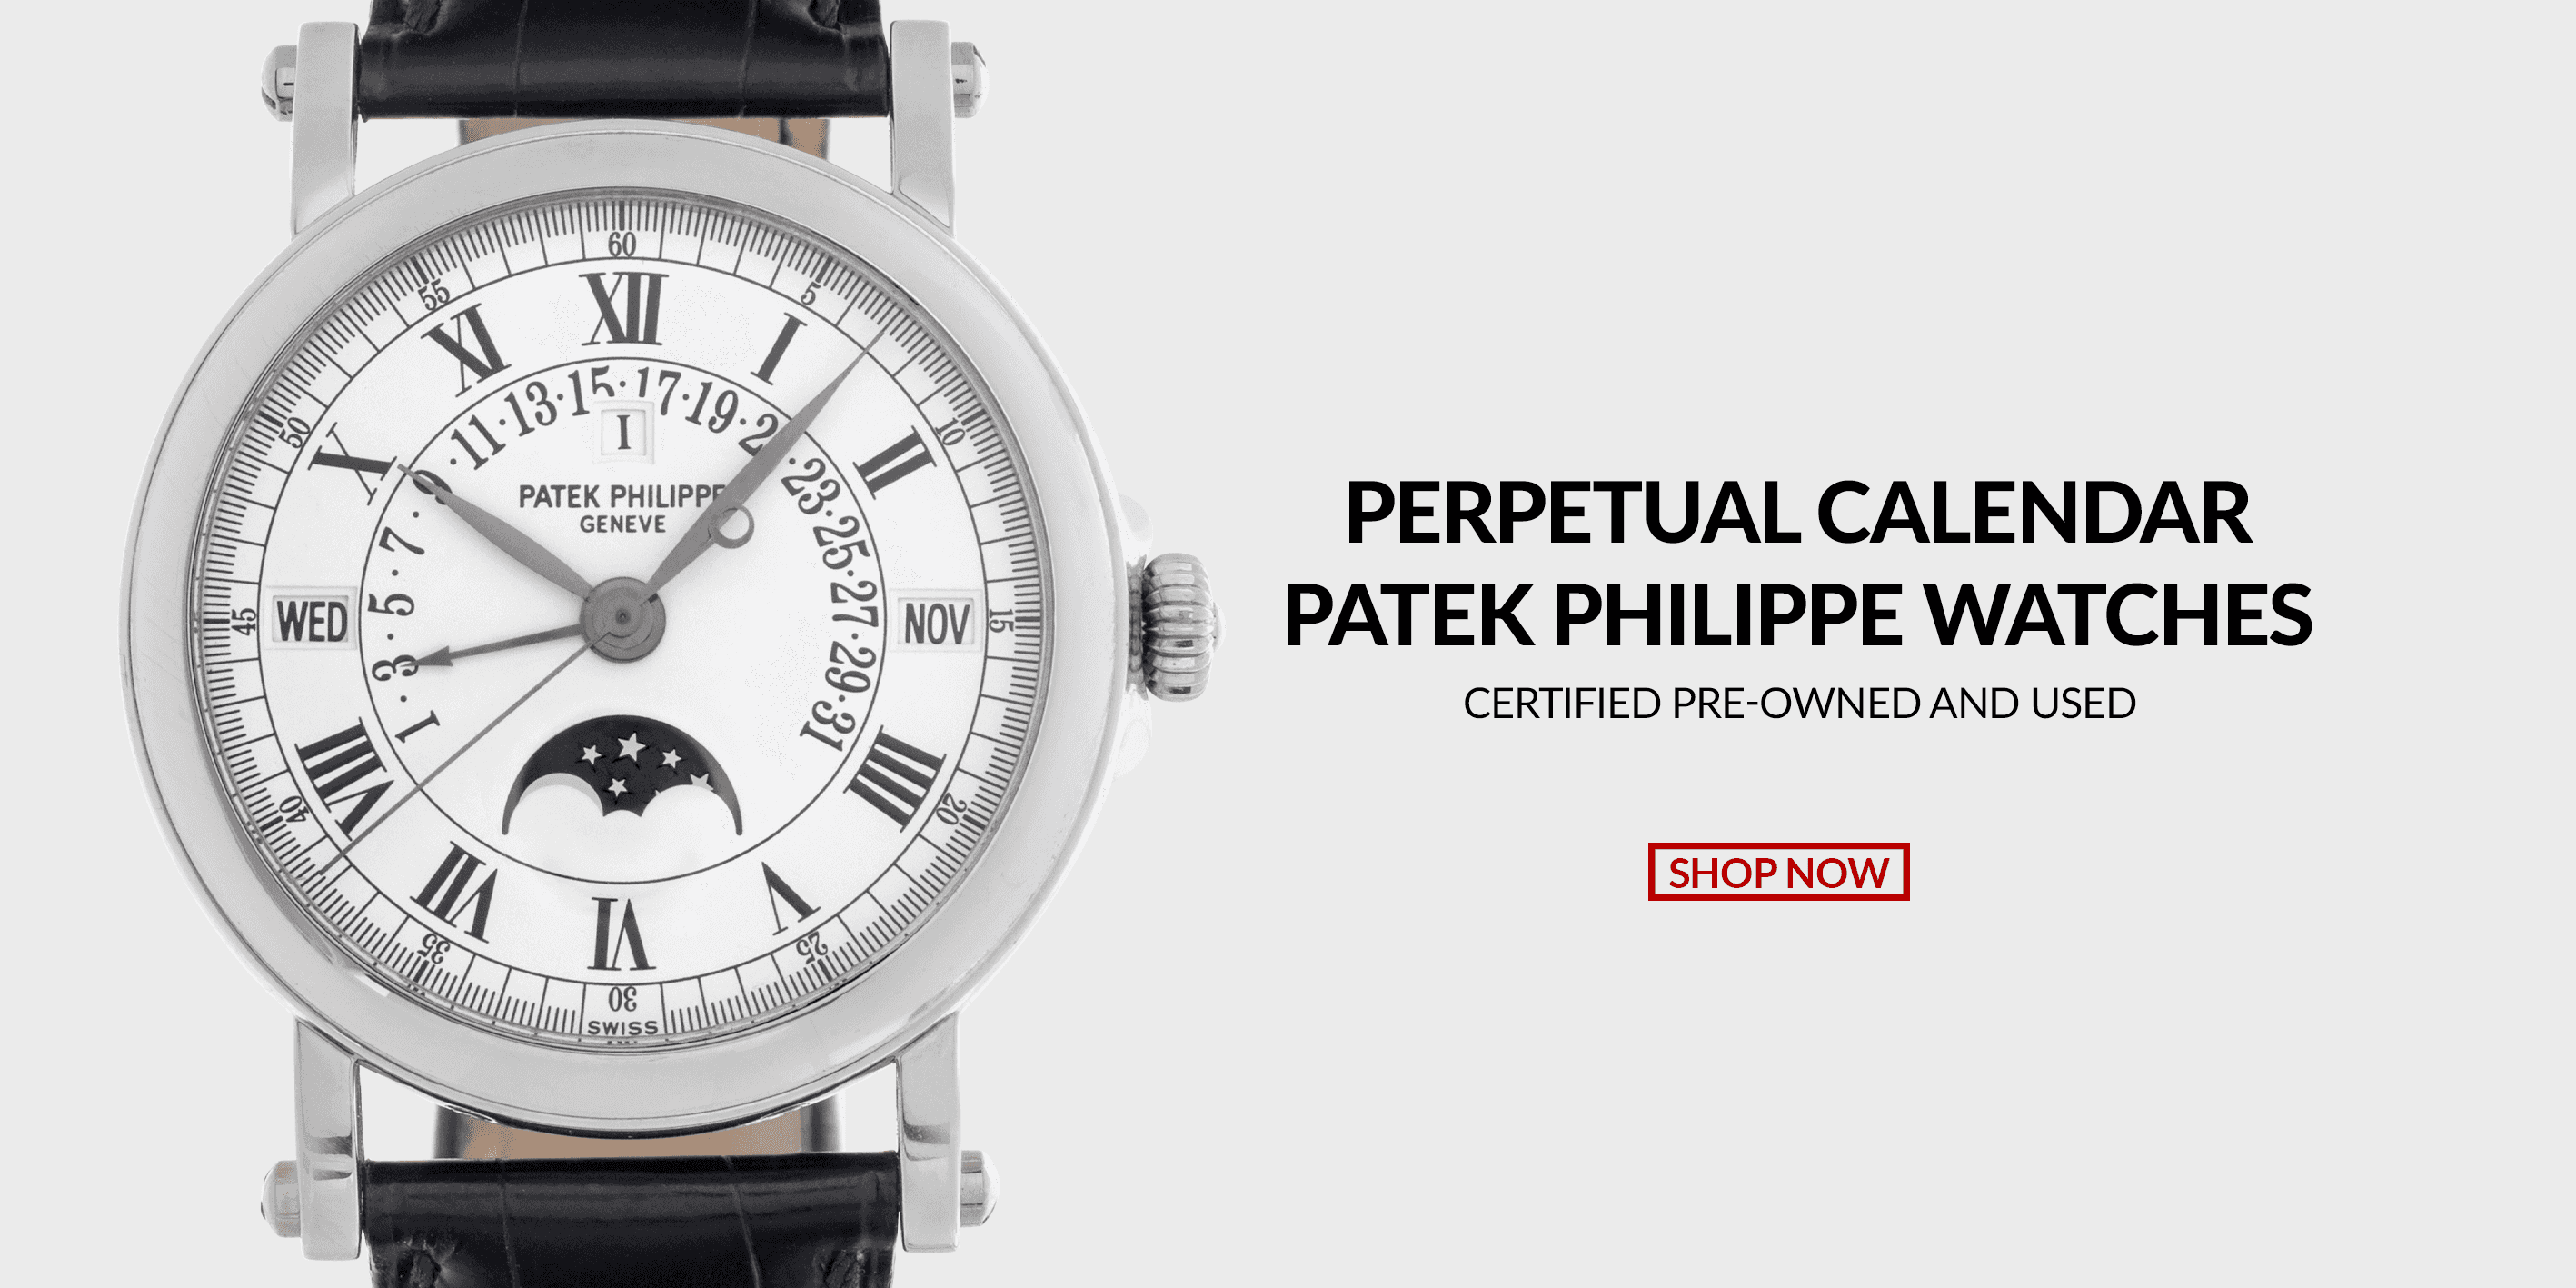 Pre-Owned Certified Used Patek Philippe Perpetual Calendar Watches Header